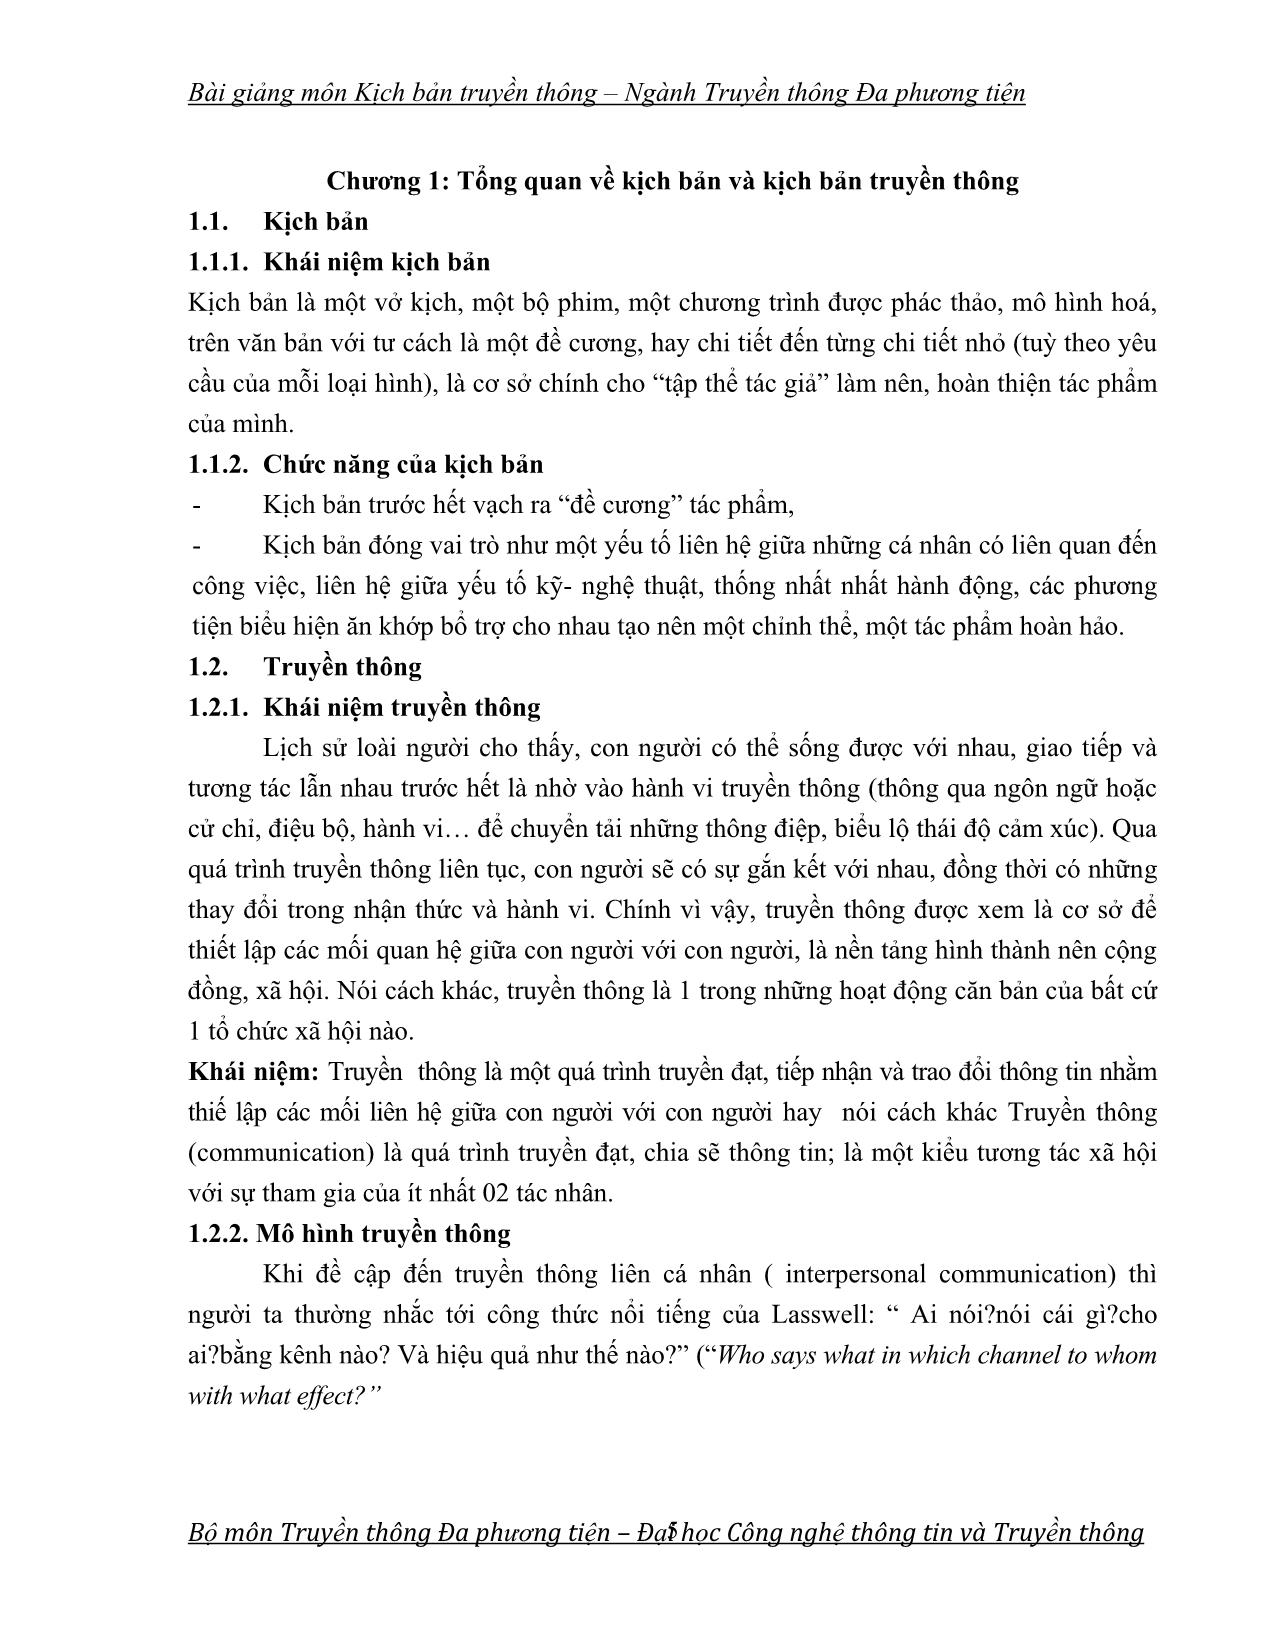 Bài giảng Kịch bản truyền thông (Phần 1) trang 5